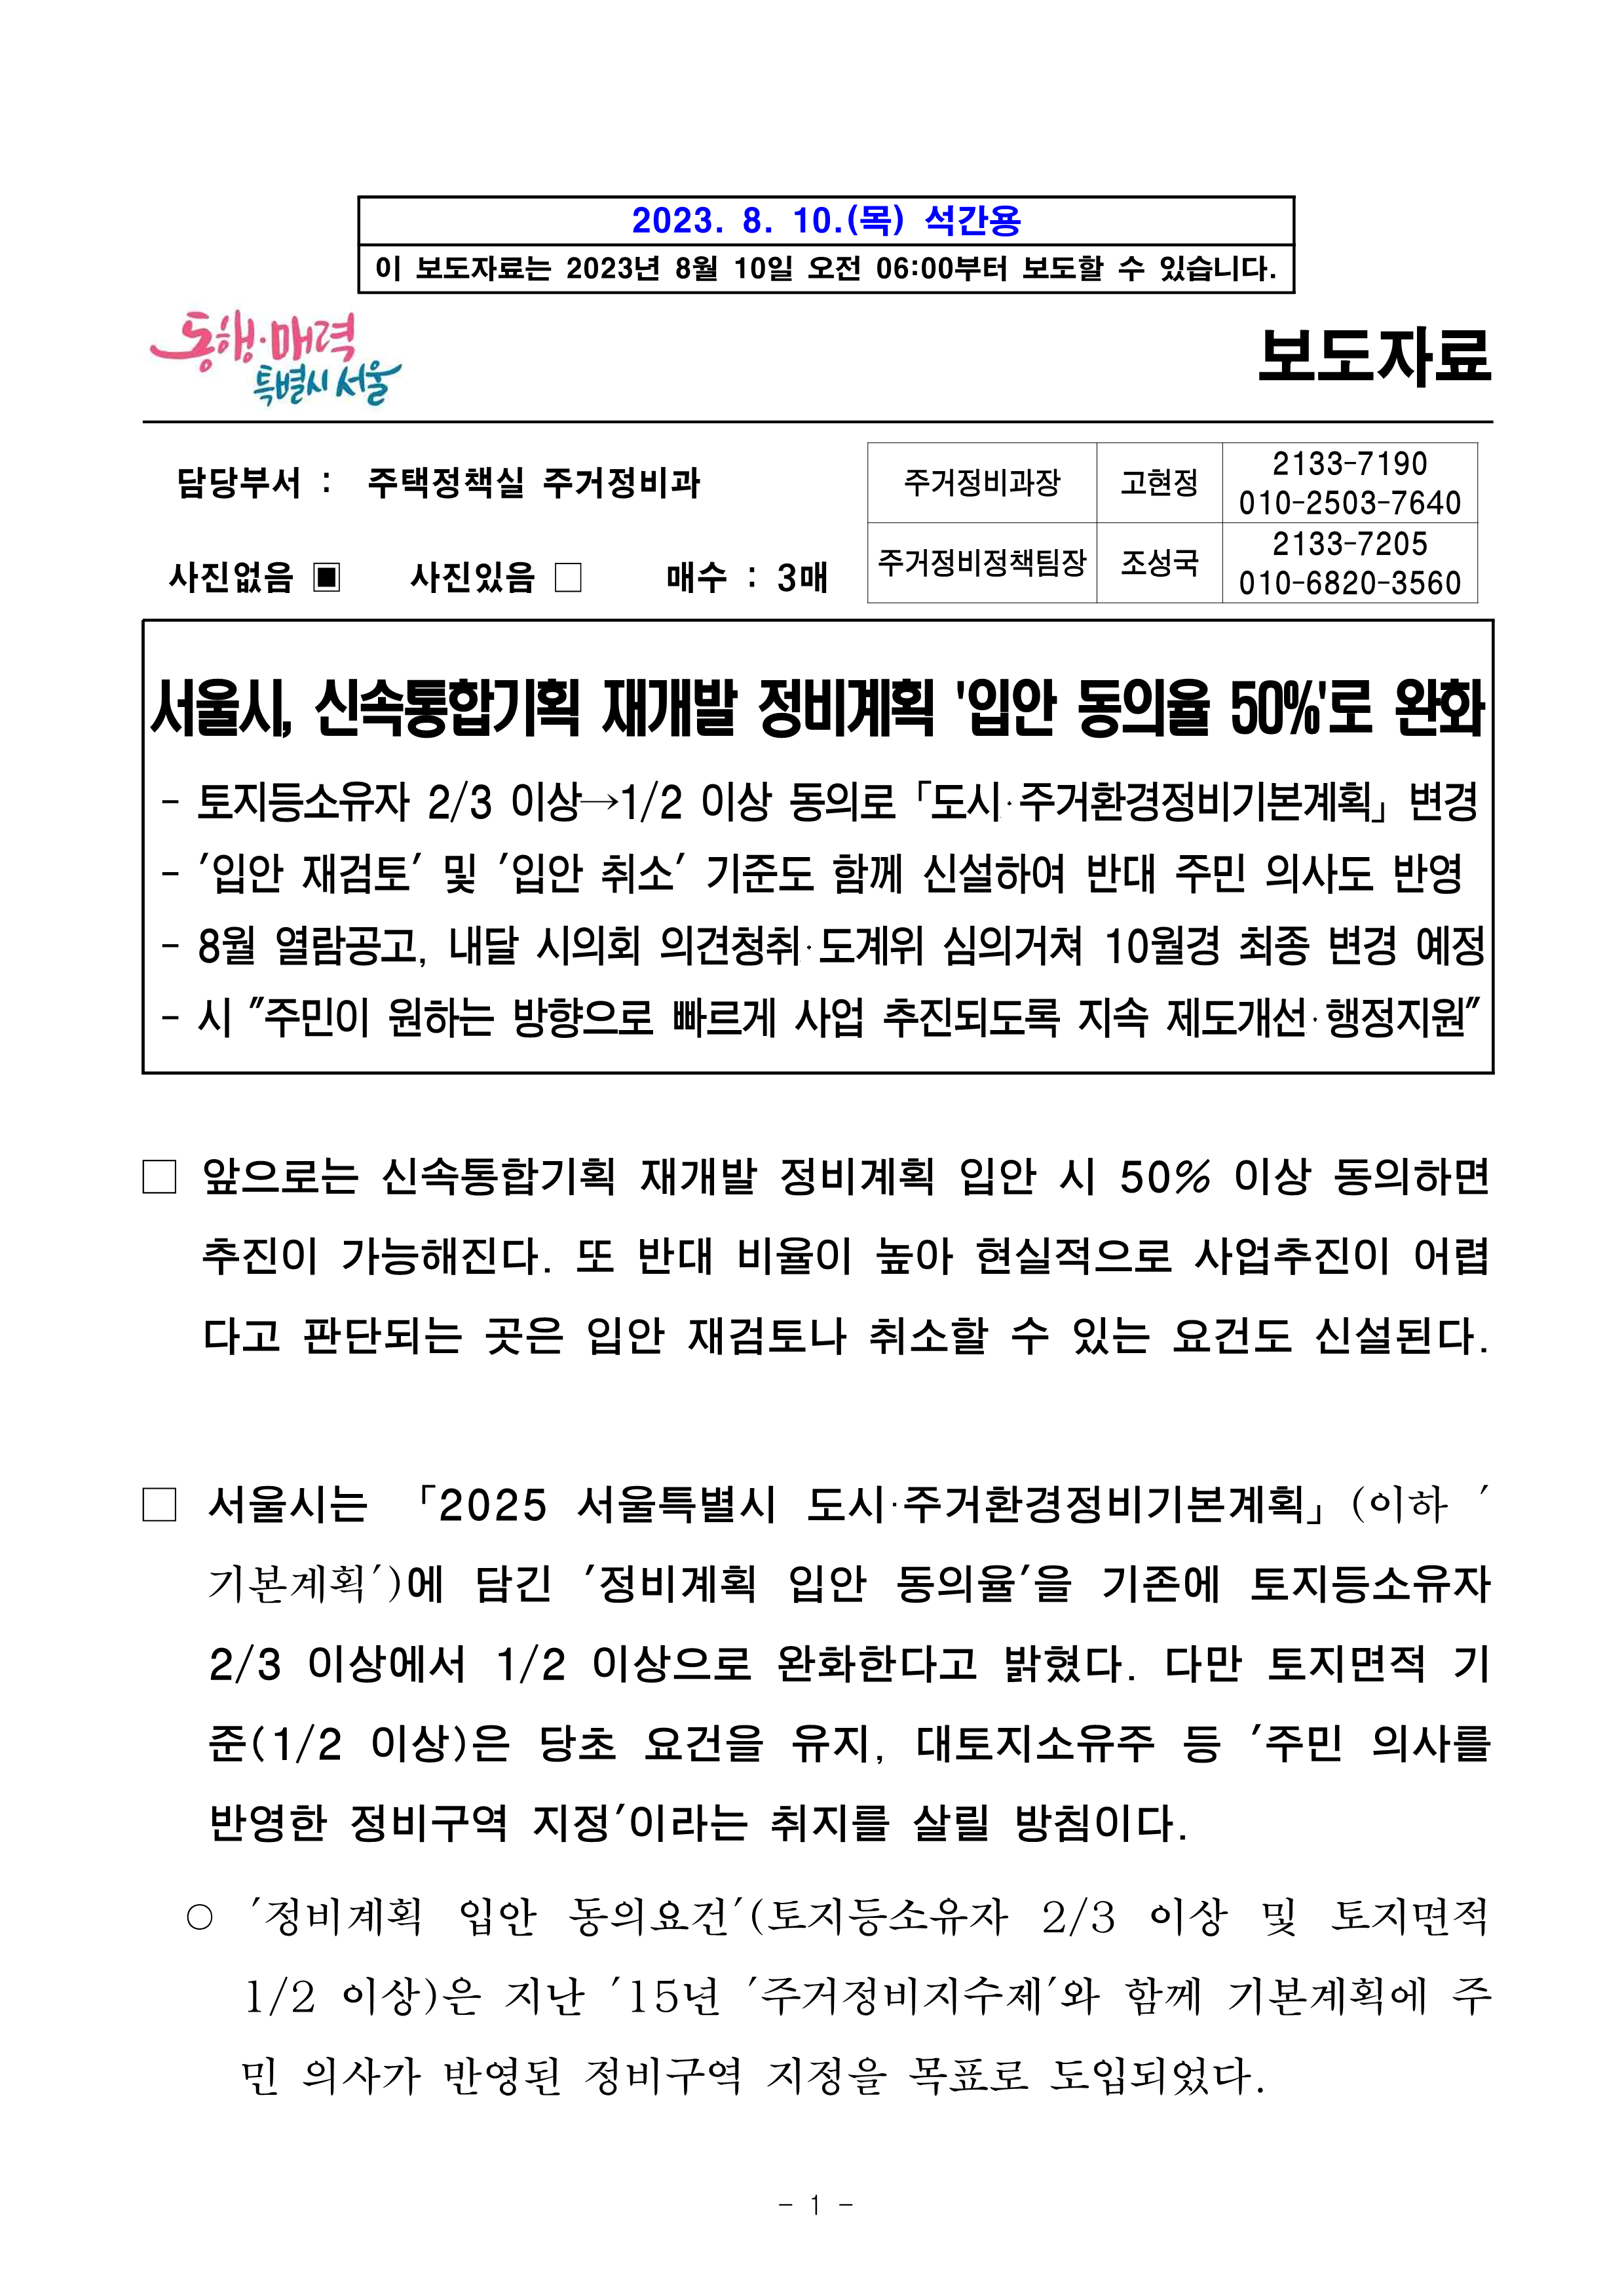 (석간)서울시, 신속통합기획 재개발 정비계획 _입안 동의율 50퍼센트_로 완화_1.png